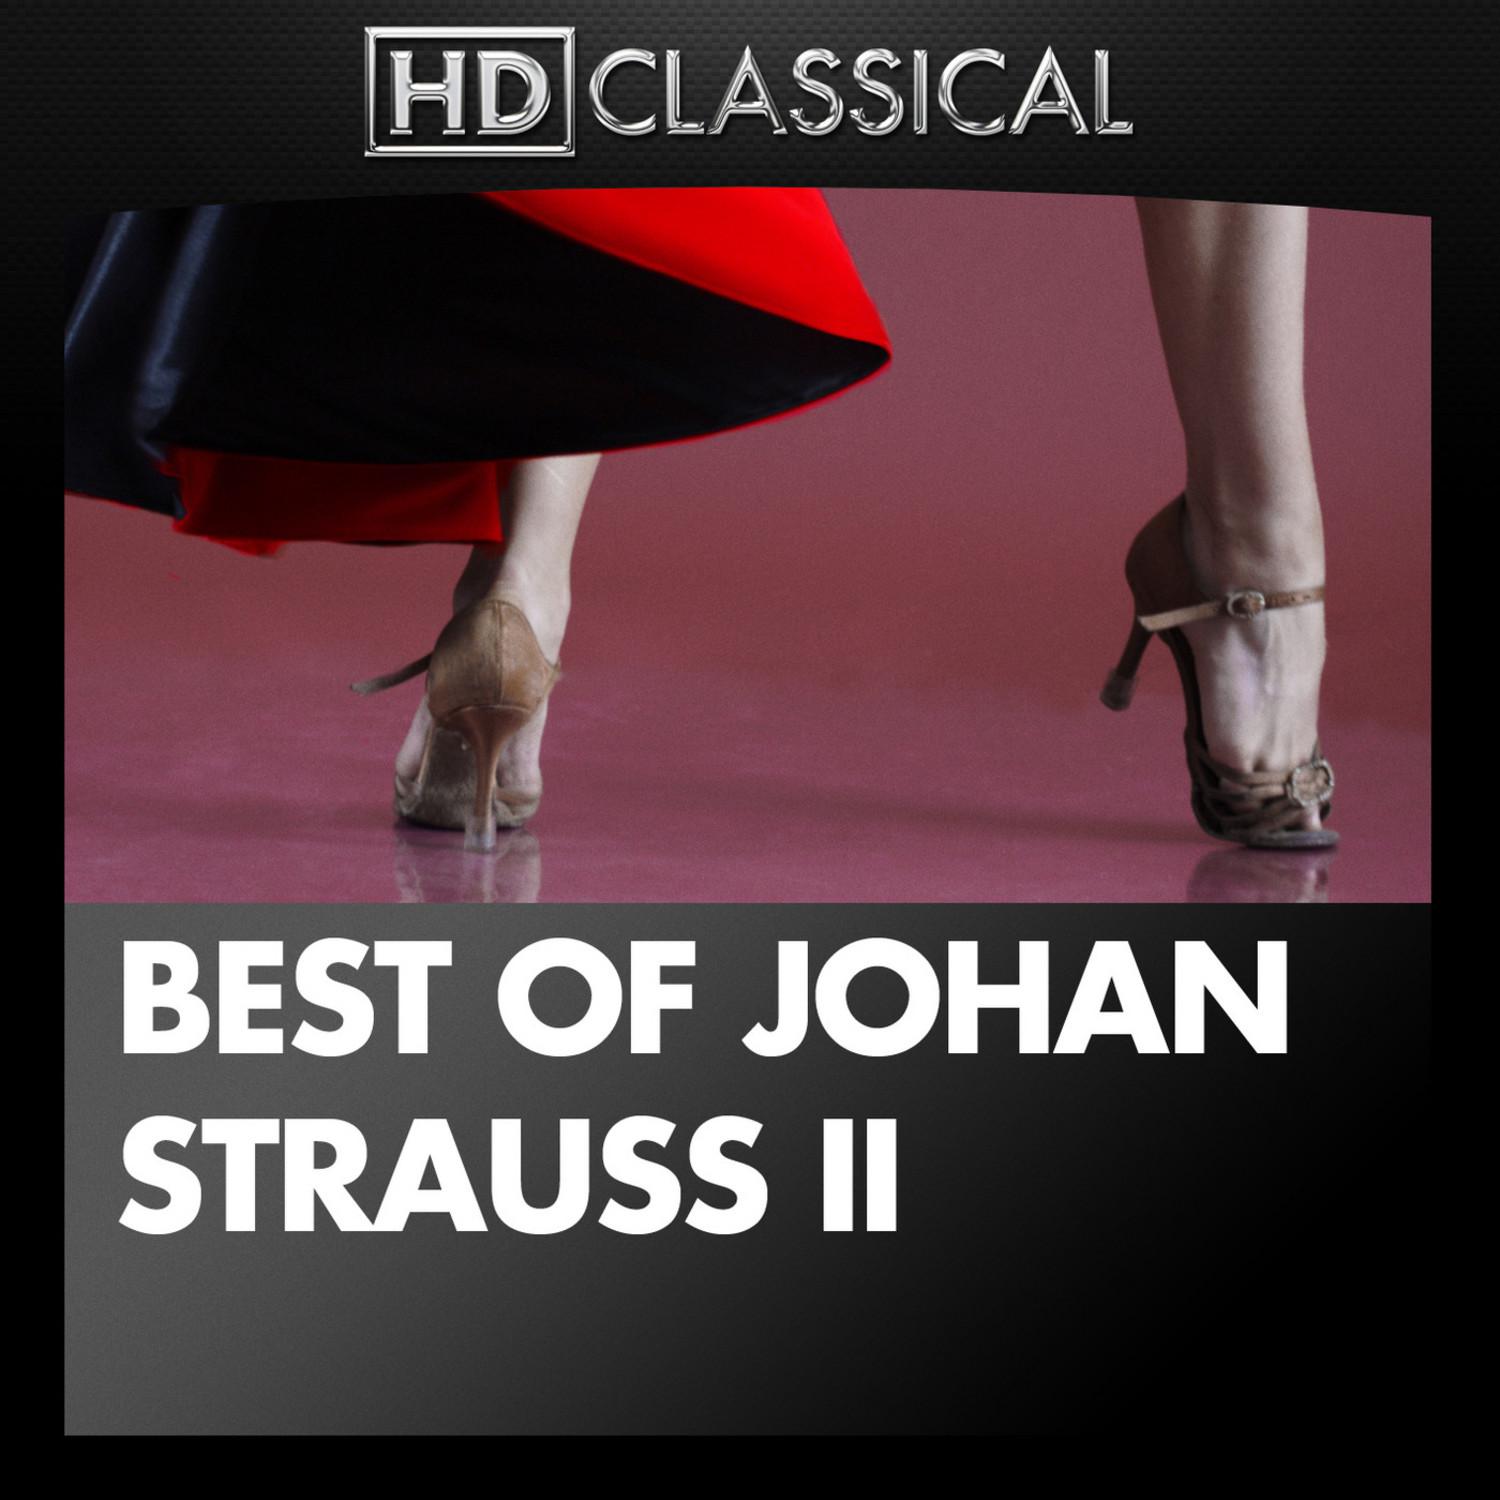 Best of Johan Strauss II